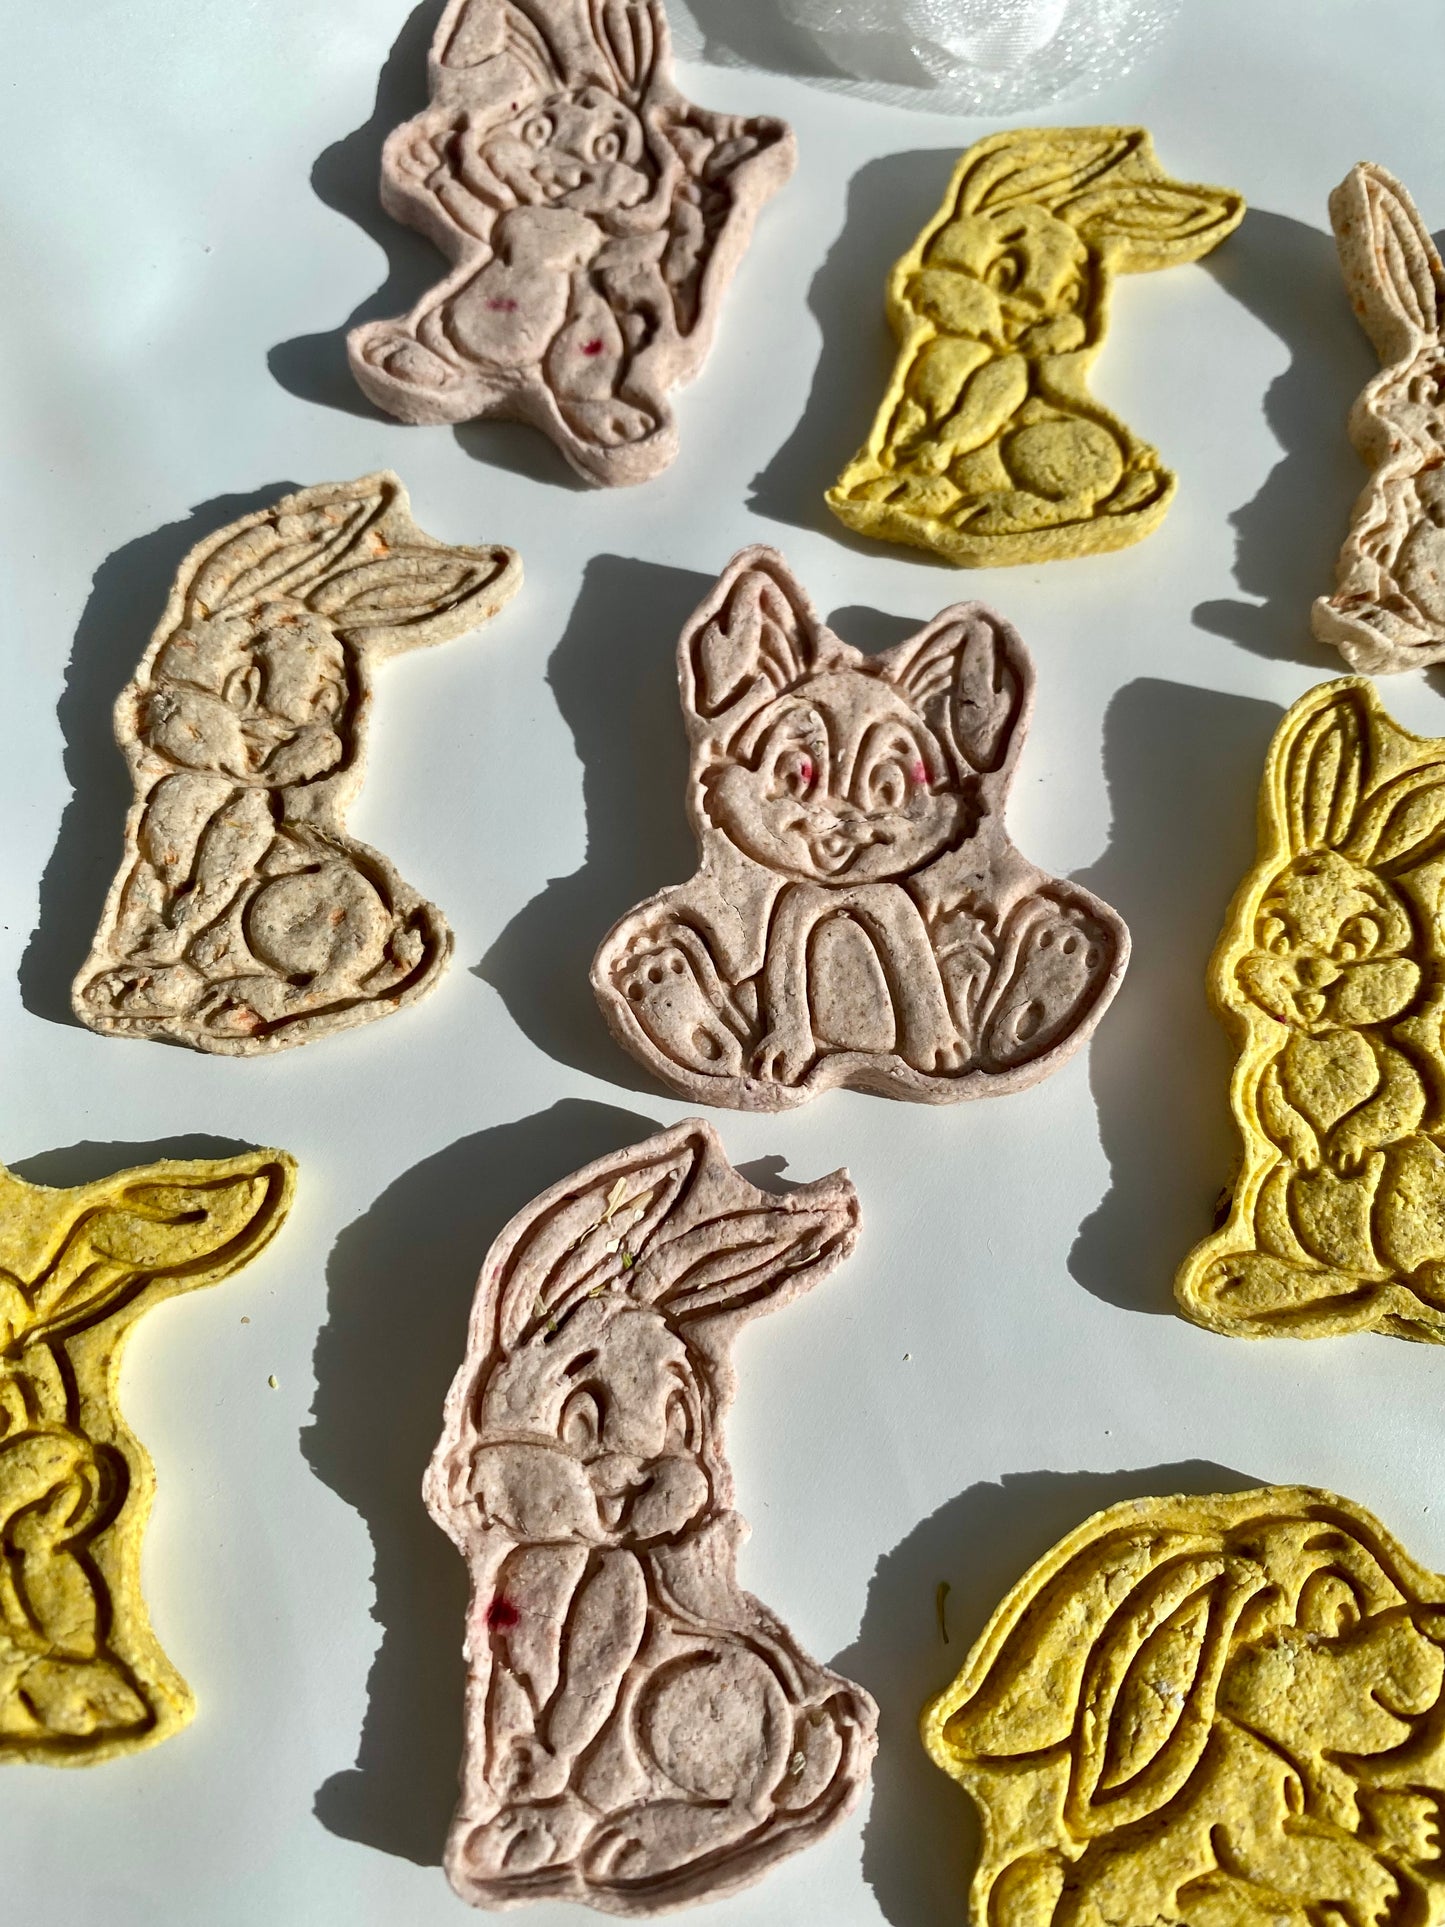 Bunny shaped treats